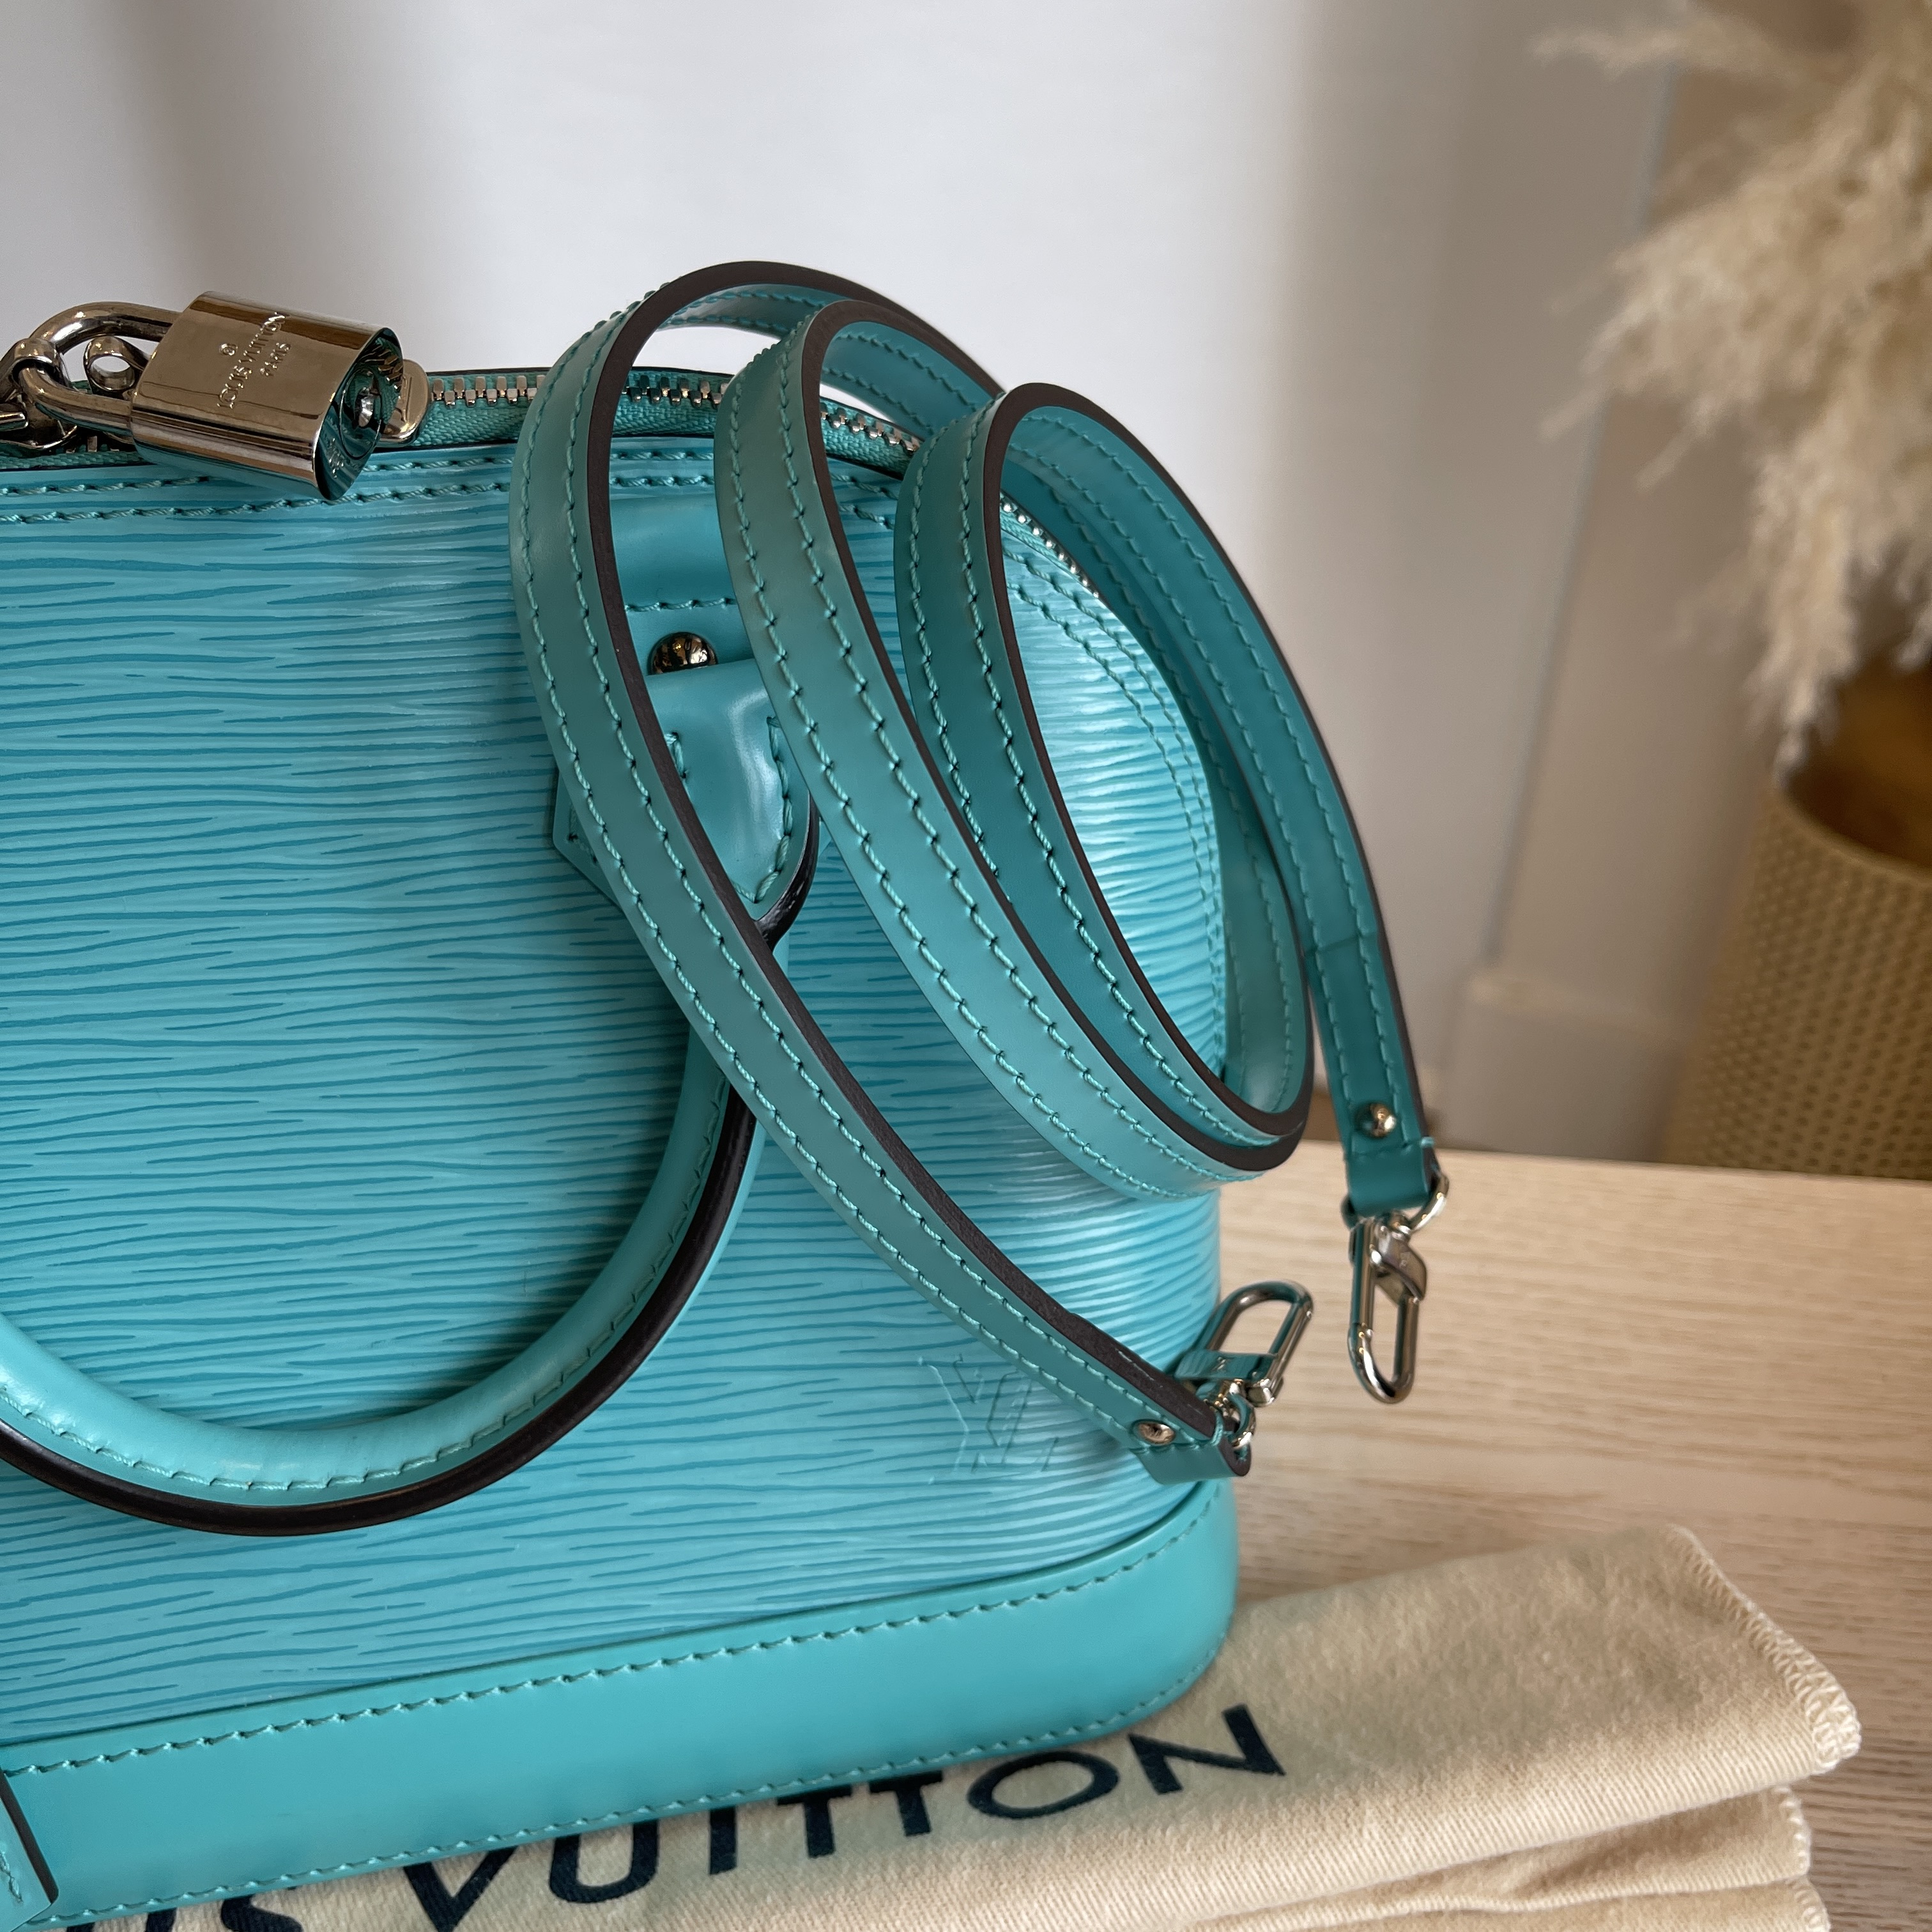 Louis Vuitton Alma BB Turquoise - THE PURSE AFFAIR